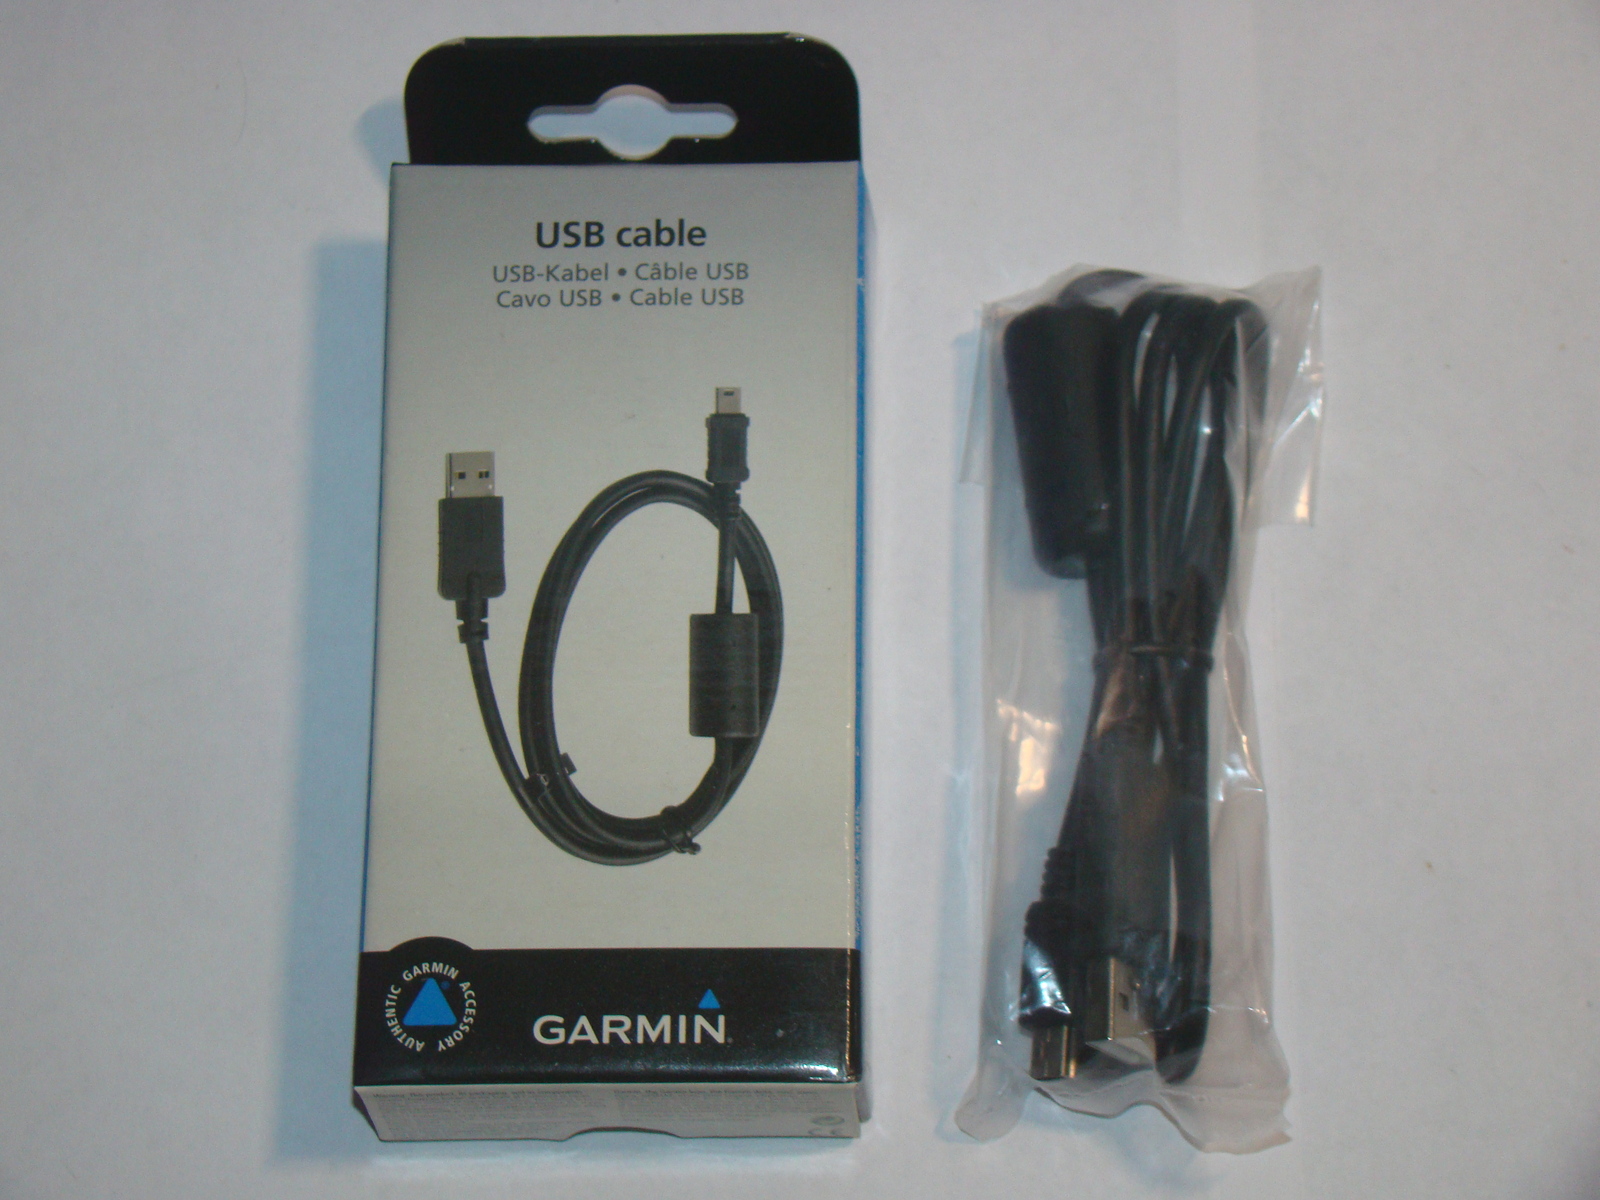 GARMIN - USB Cable 010-10723-01 - $21.00